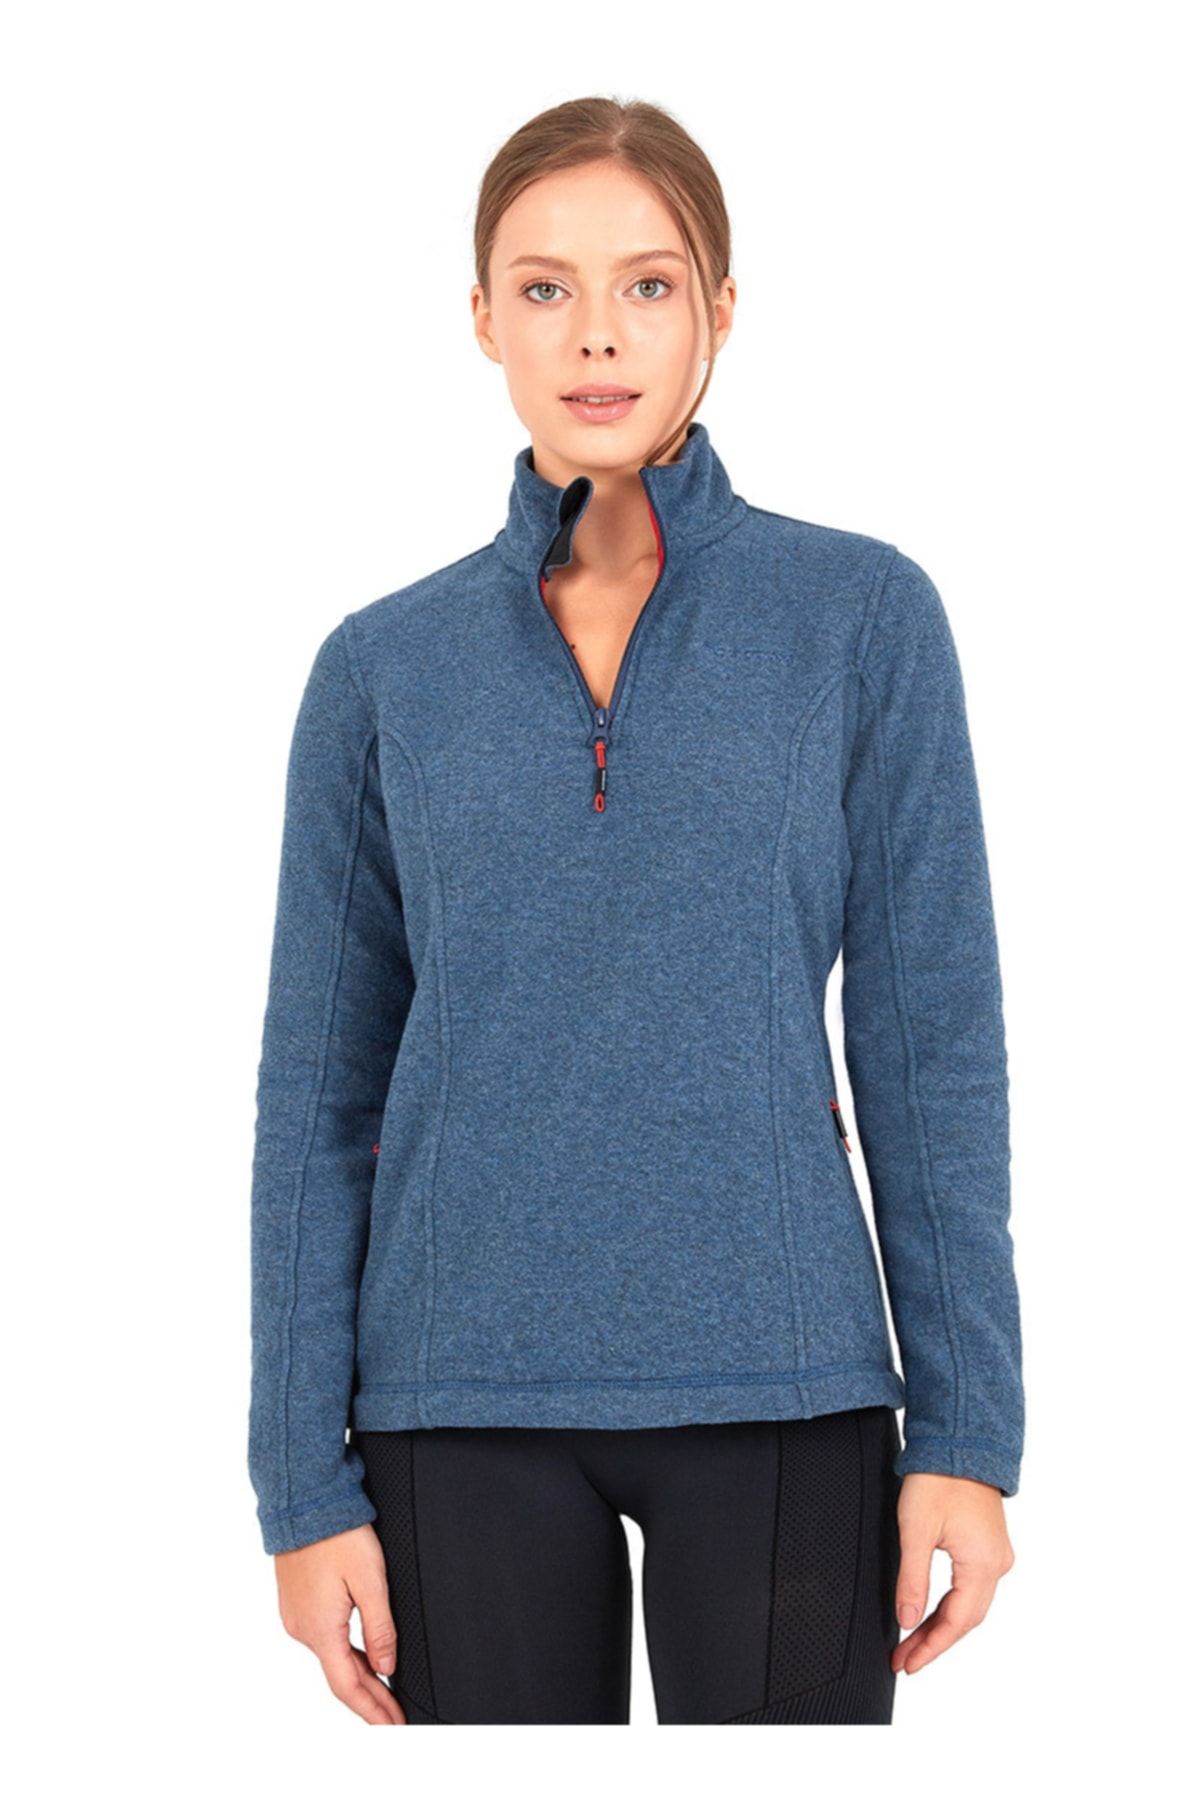 Blackspade Kadın Fermuarlı Termal Sweatshirt 2. Seviye 50465 - Mavi